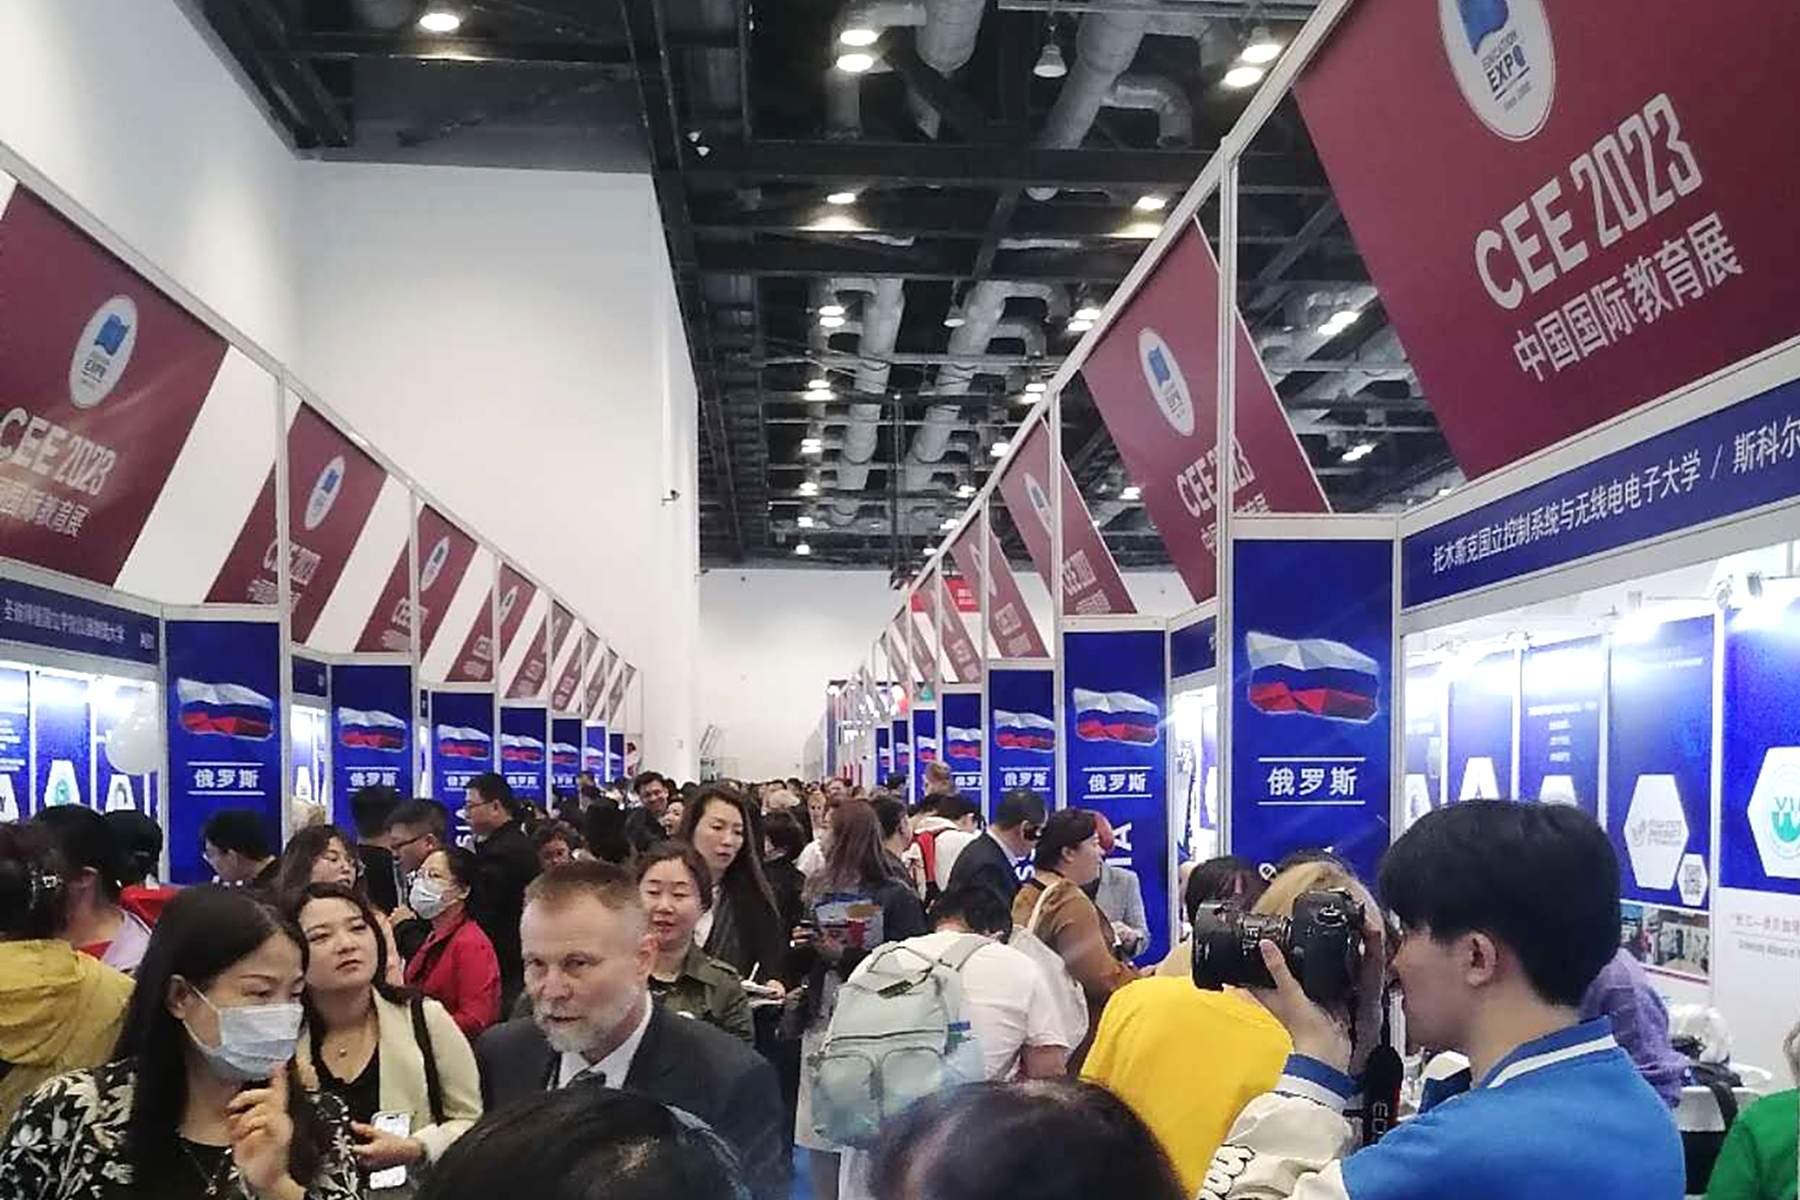 ВВГУ на международной образовательной выставке China Education Expo в Пекине